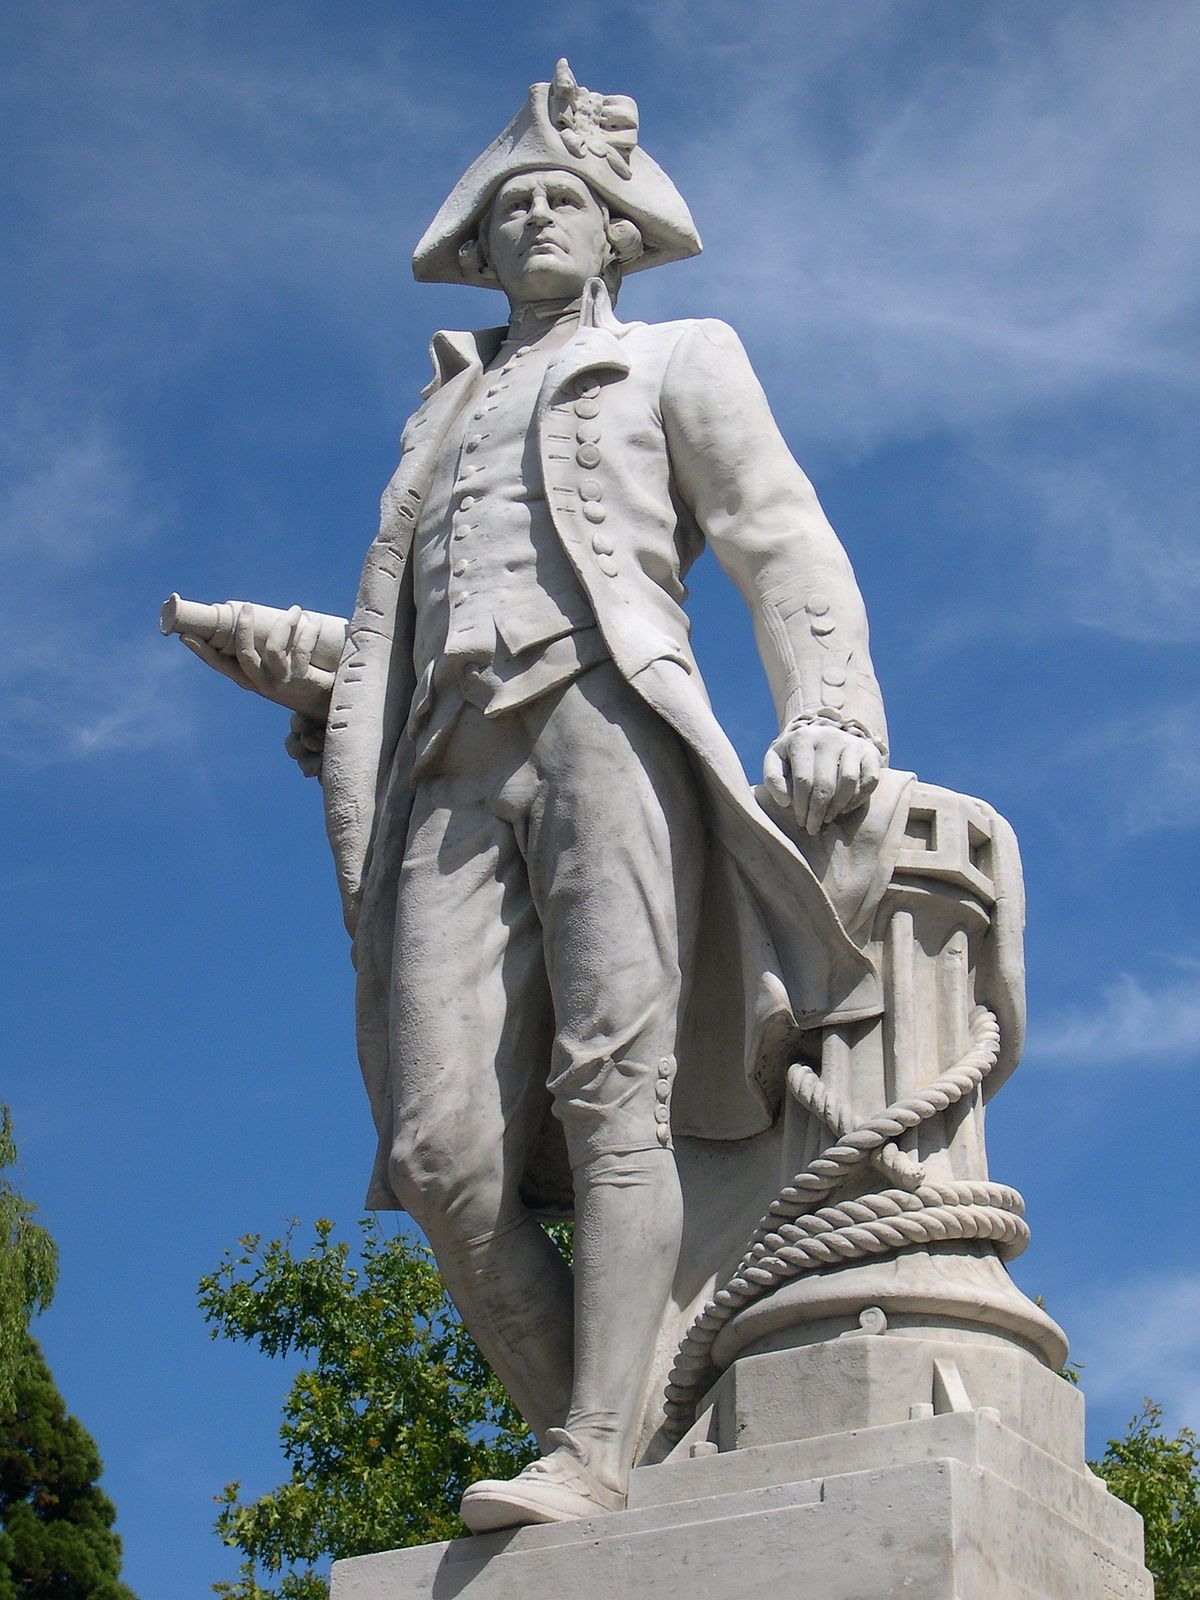 Cook Statue, Christchurch - Wikipedia